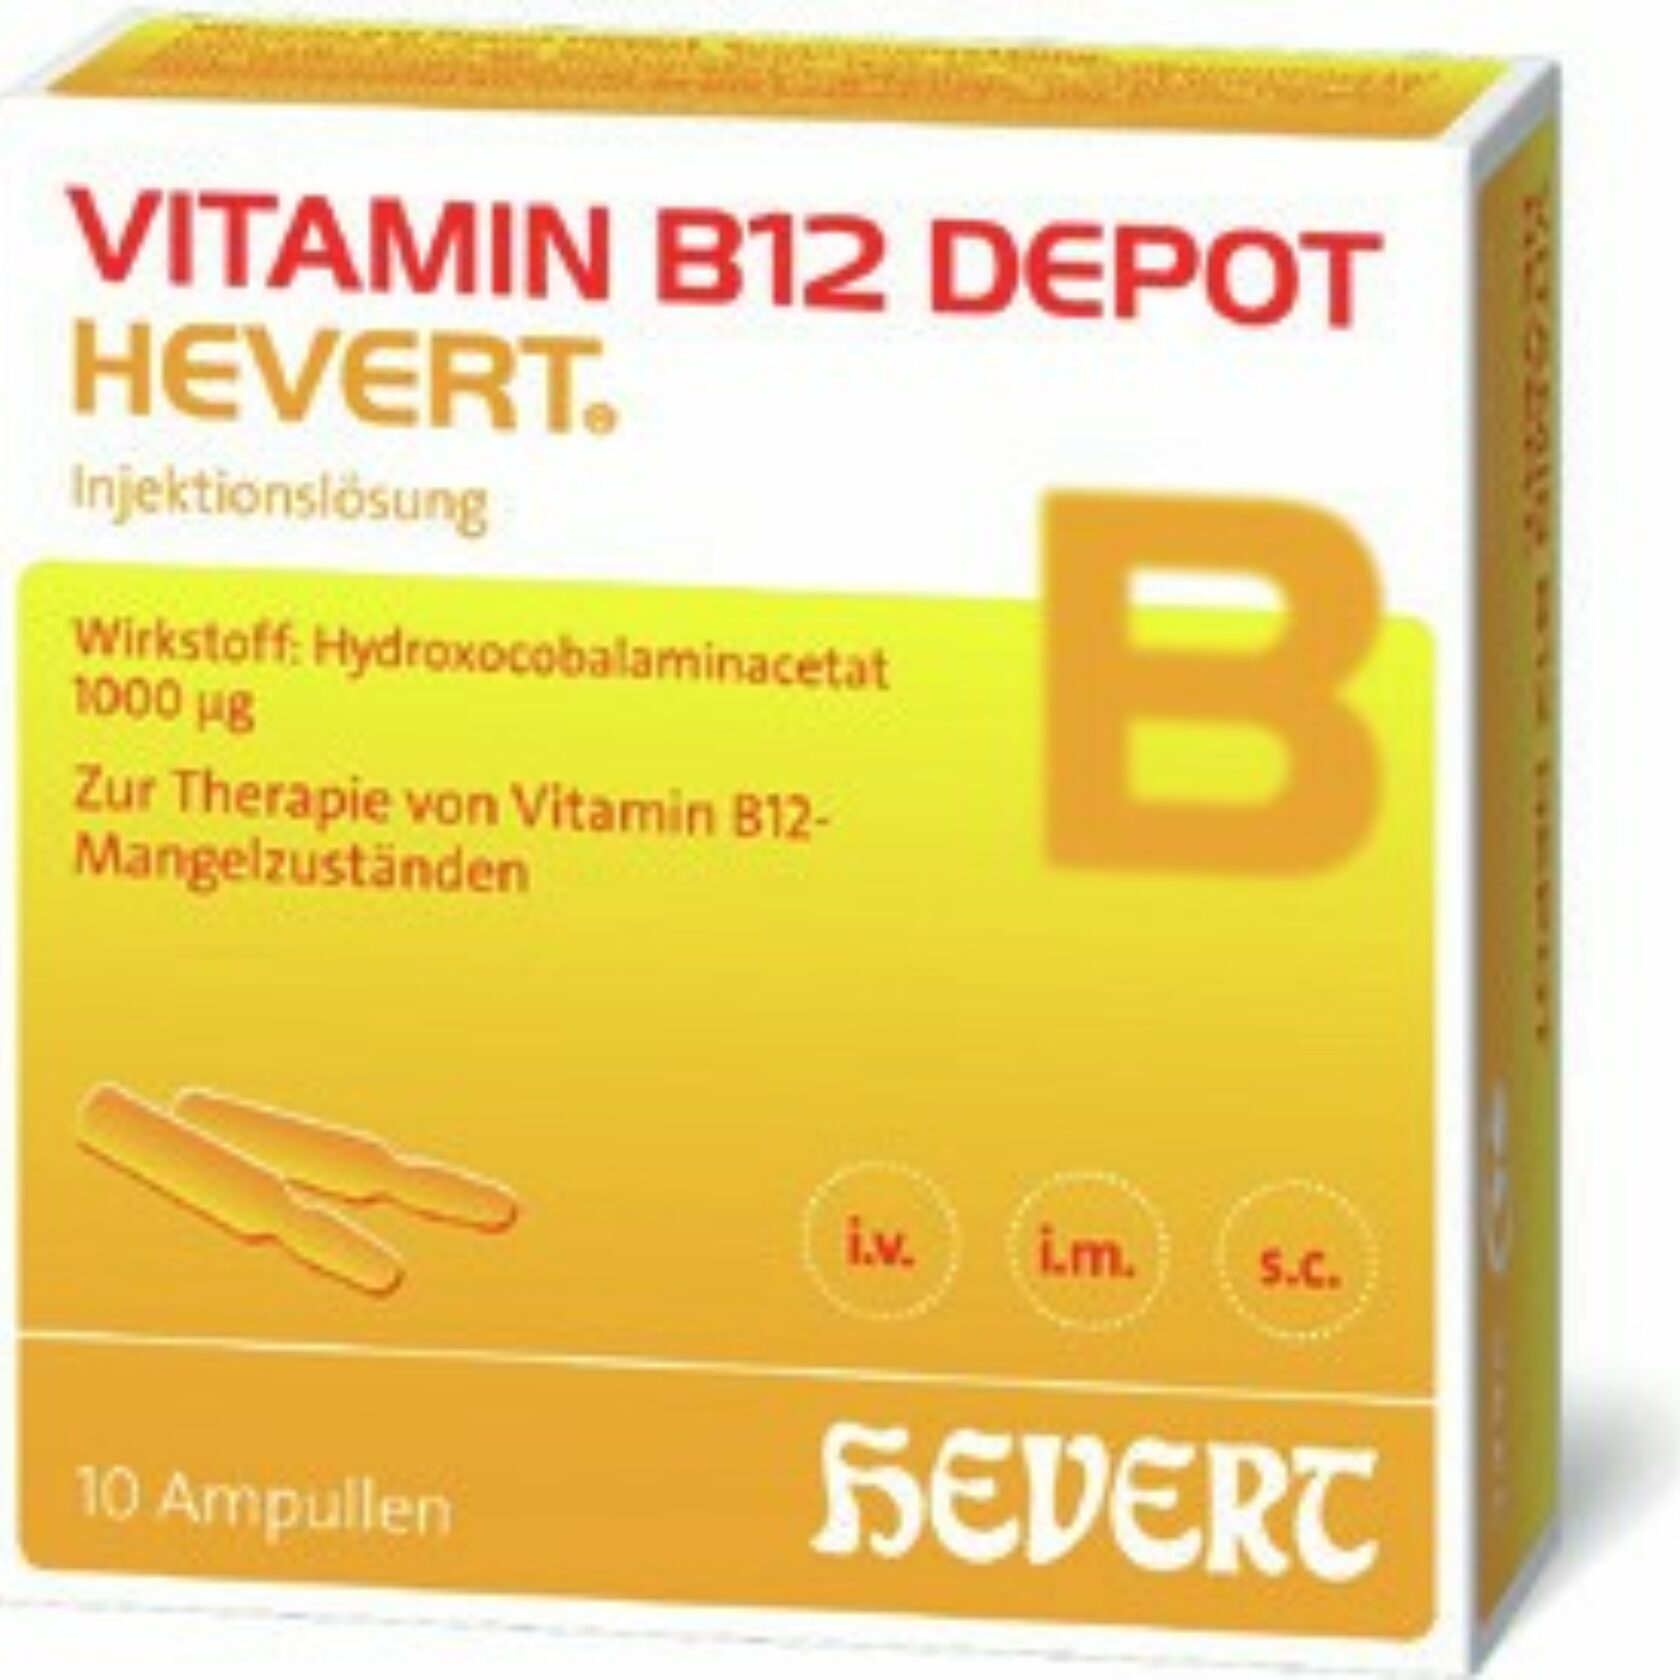 Produktpackung von Vitamin B12 Depot Hevert